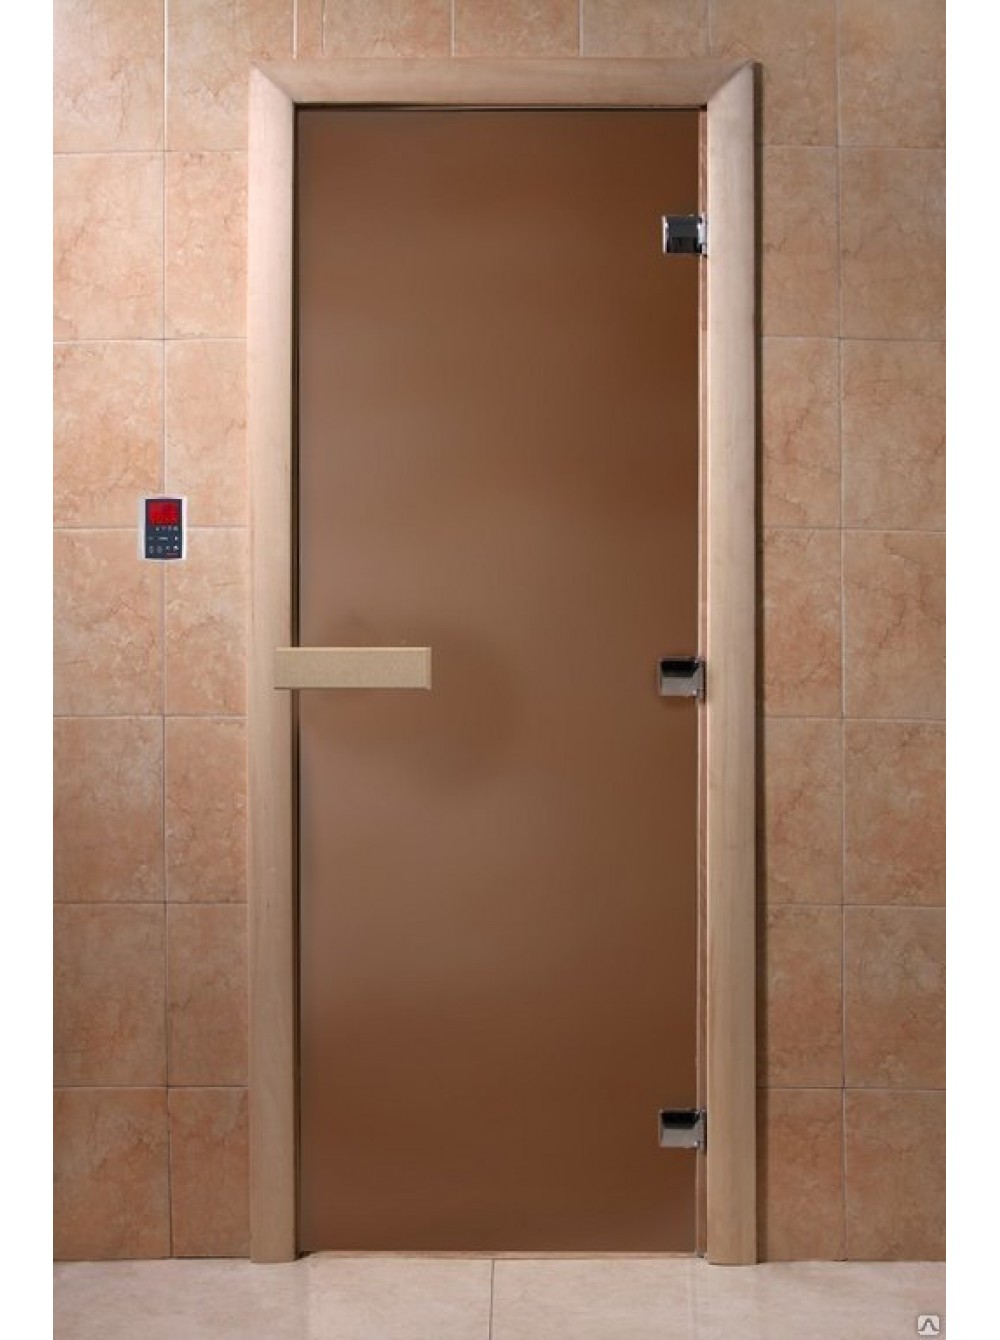 Дверь банная DW 700*1800 БРОНЗА МАТОВАЯ 8мм 3петли (ольха/береза)